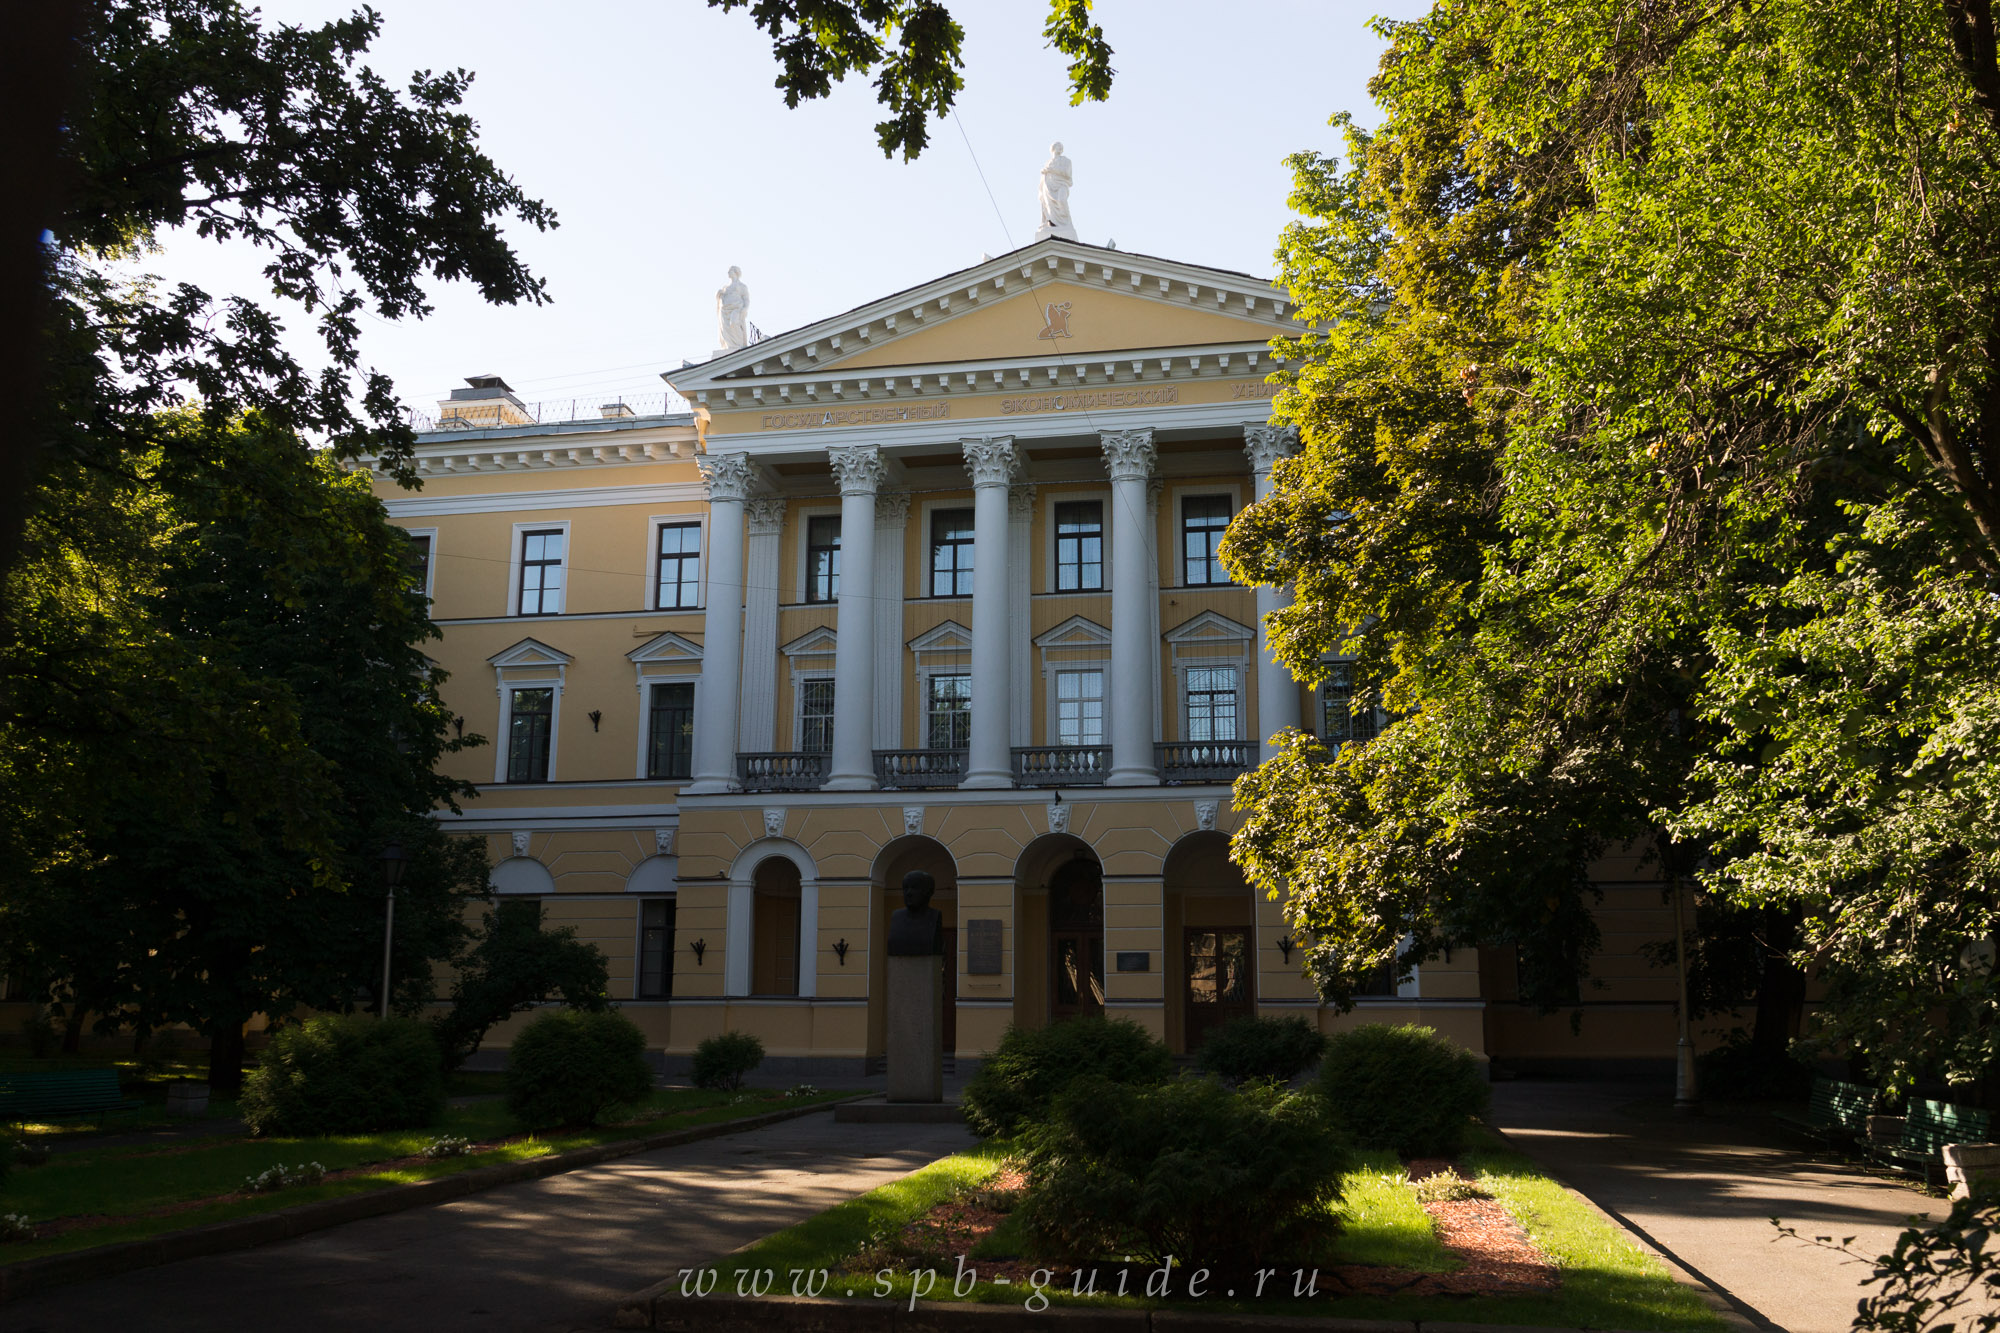 Сайт петербургского экономического университета